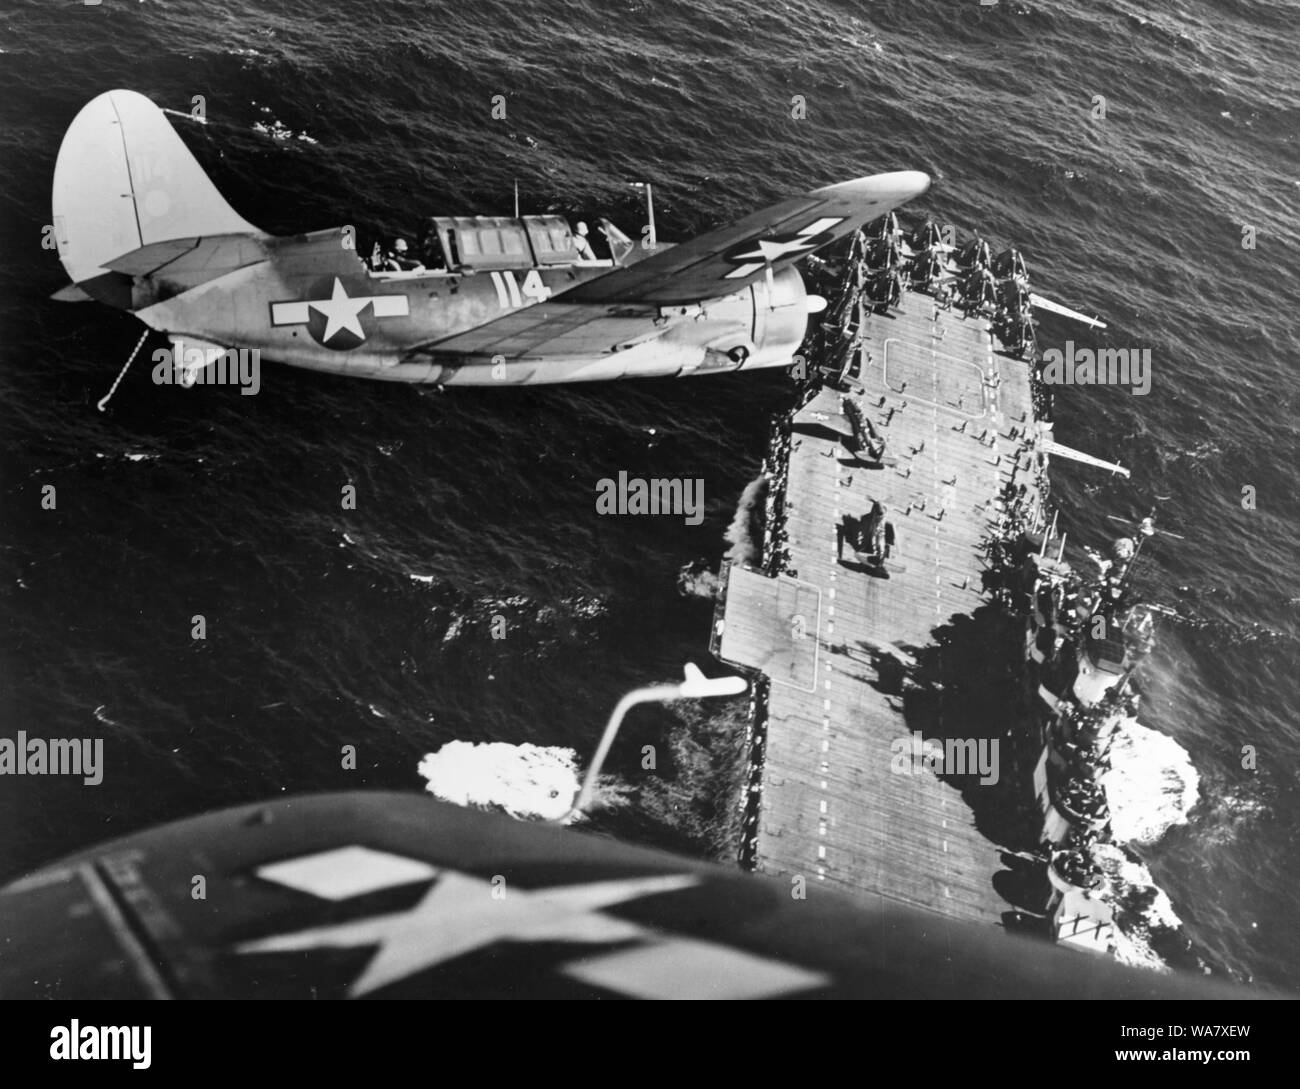 Curtiss SB2C Helldiver, un porte-avions bombardier en piqué pendant la Deuxième Guerre mondiale. Curtiss SB2C-3 Helldiver avion banques sur l'USS Hornet (CV-12), porte-avions avant l'atterrissage, à la suite des grèves sur l'expédition japonaise dans la mer de Chine, vers 1945 Banque D'Images